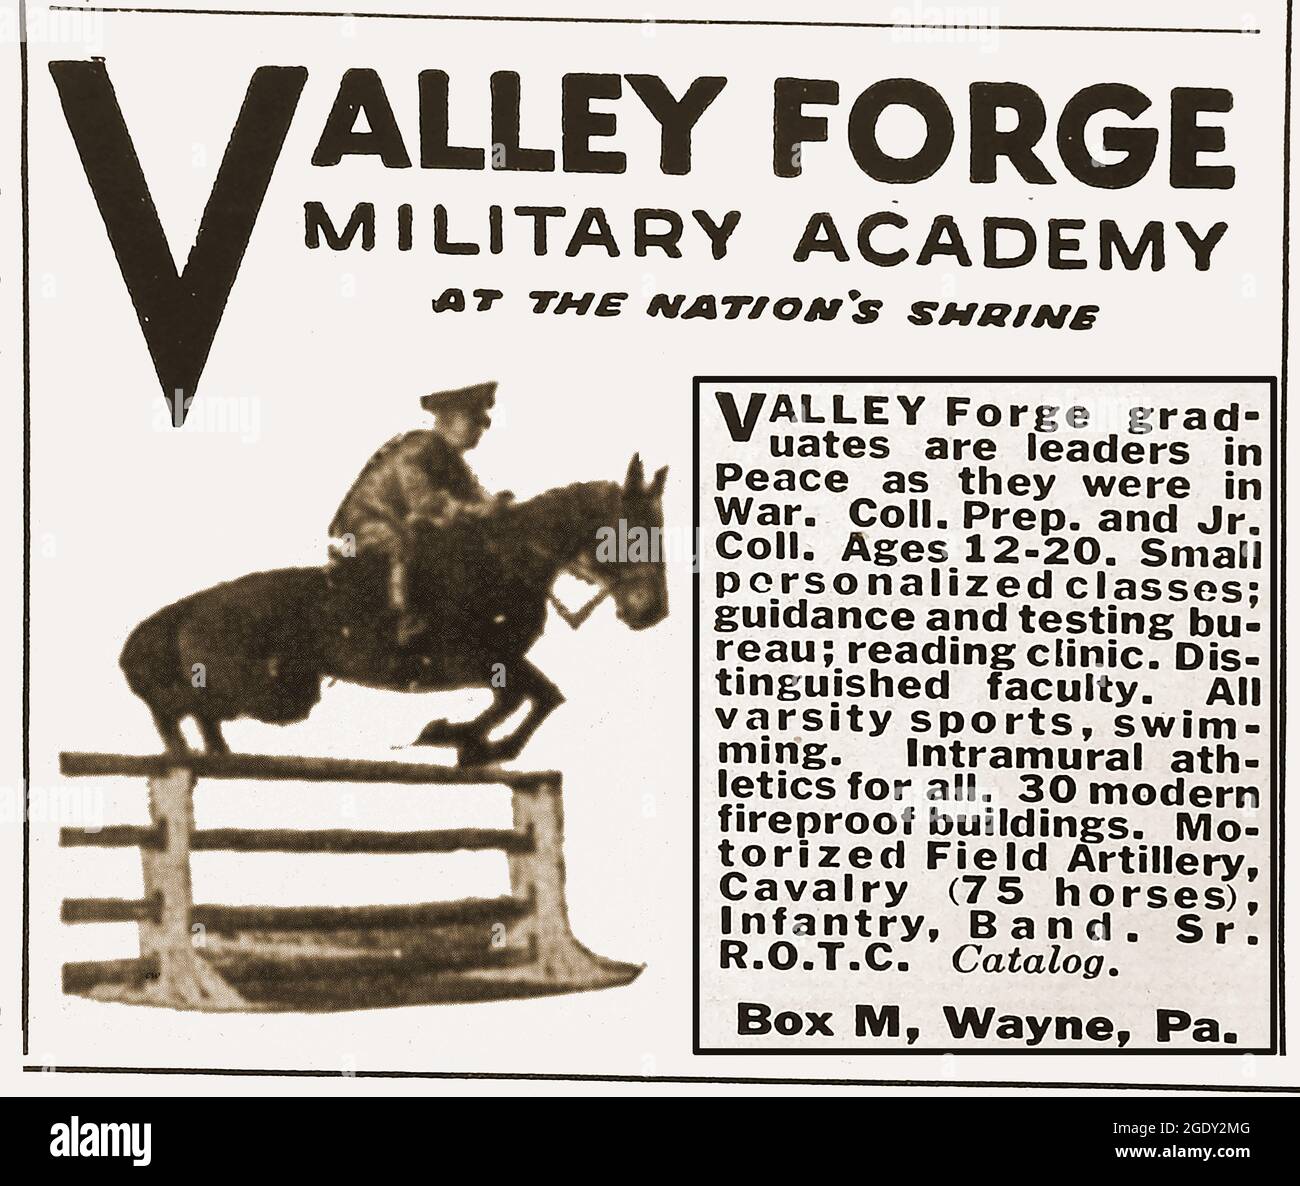 Un anuncio de 1940 para la Academia Militar de Valley Forge 'en el santuario de la nación', Wayne, Pennsylvania, Estados Unidos. Foto de stock